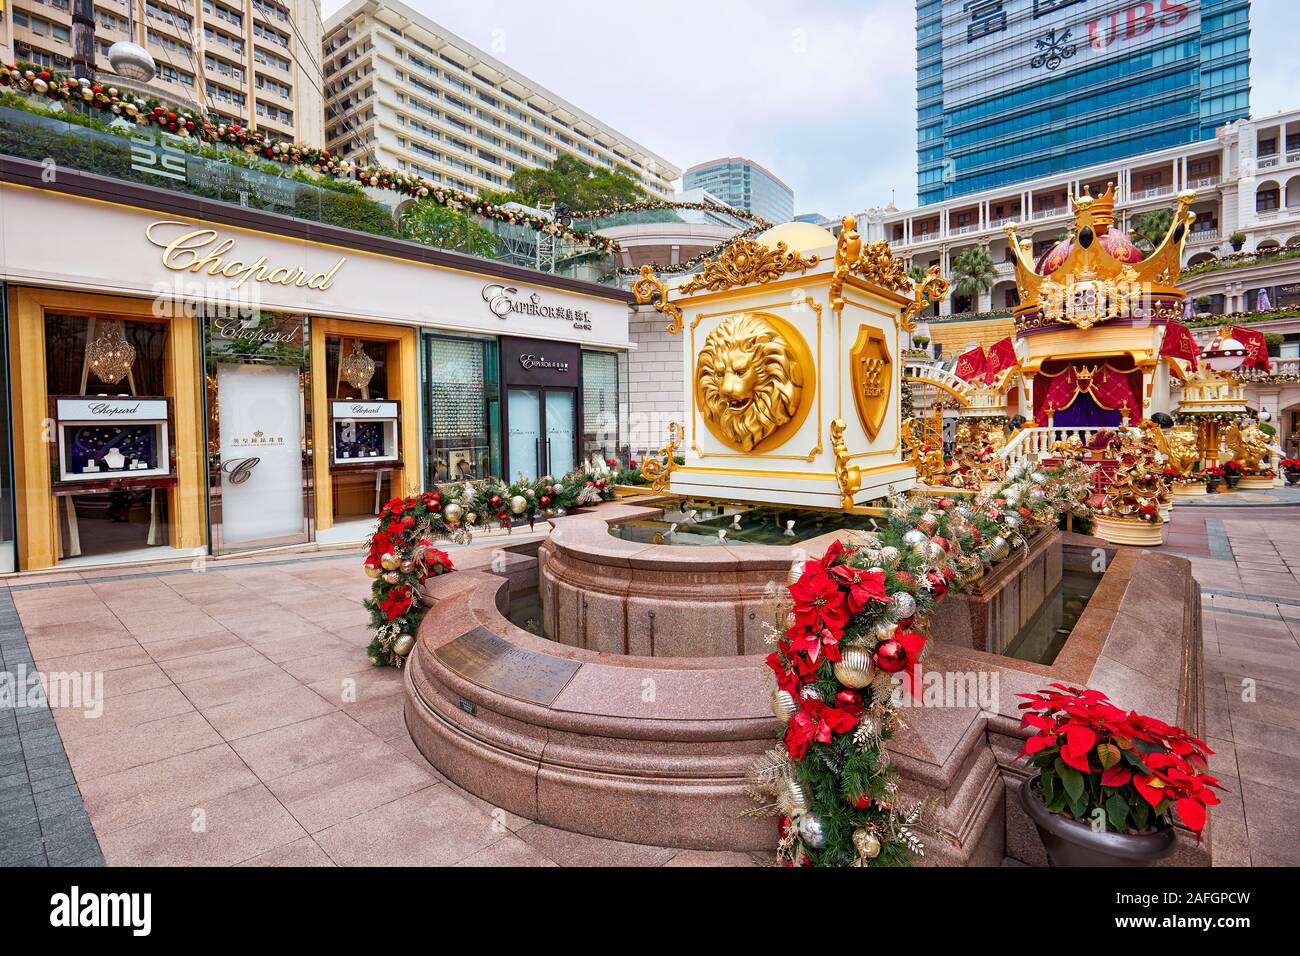 Installazione colorati nella parte anteriore del lussuoso imperatore Shop a 1881 composto del patrimonio. Tsim Sha Tsui, Kowloon, Hong Kong, Cina. Foto Stock